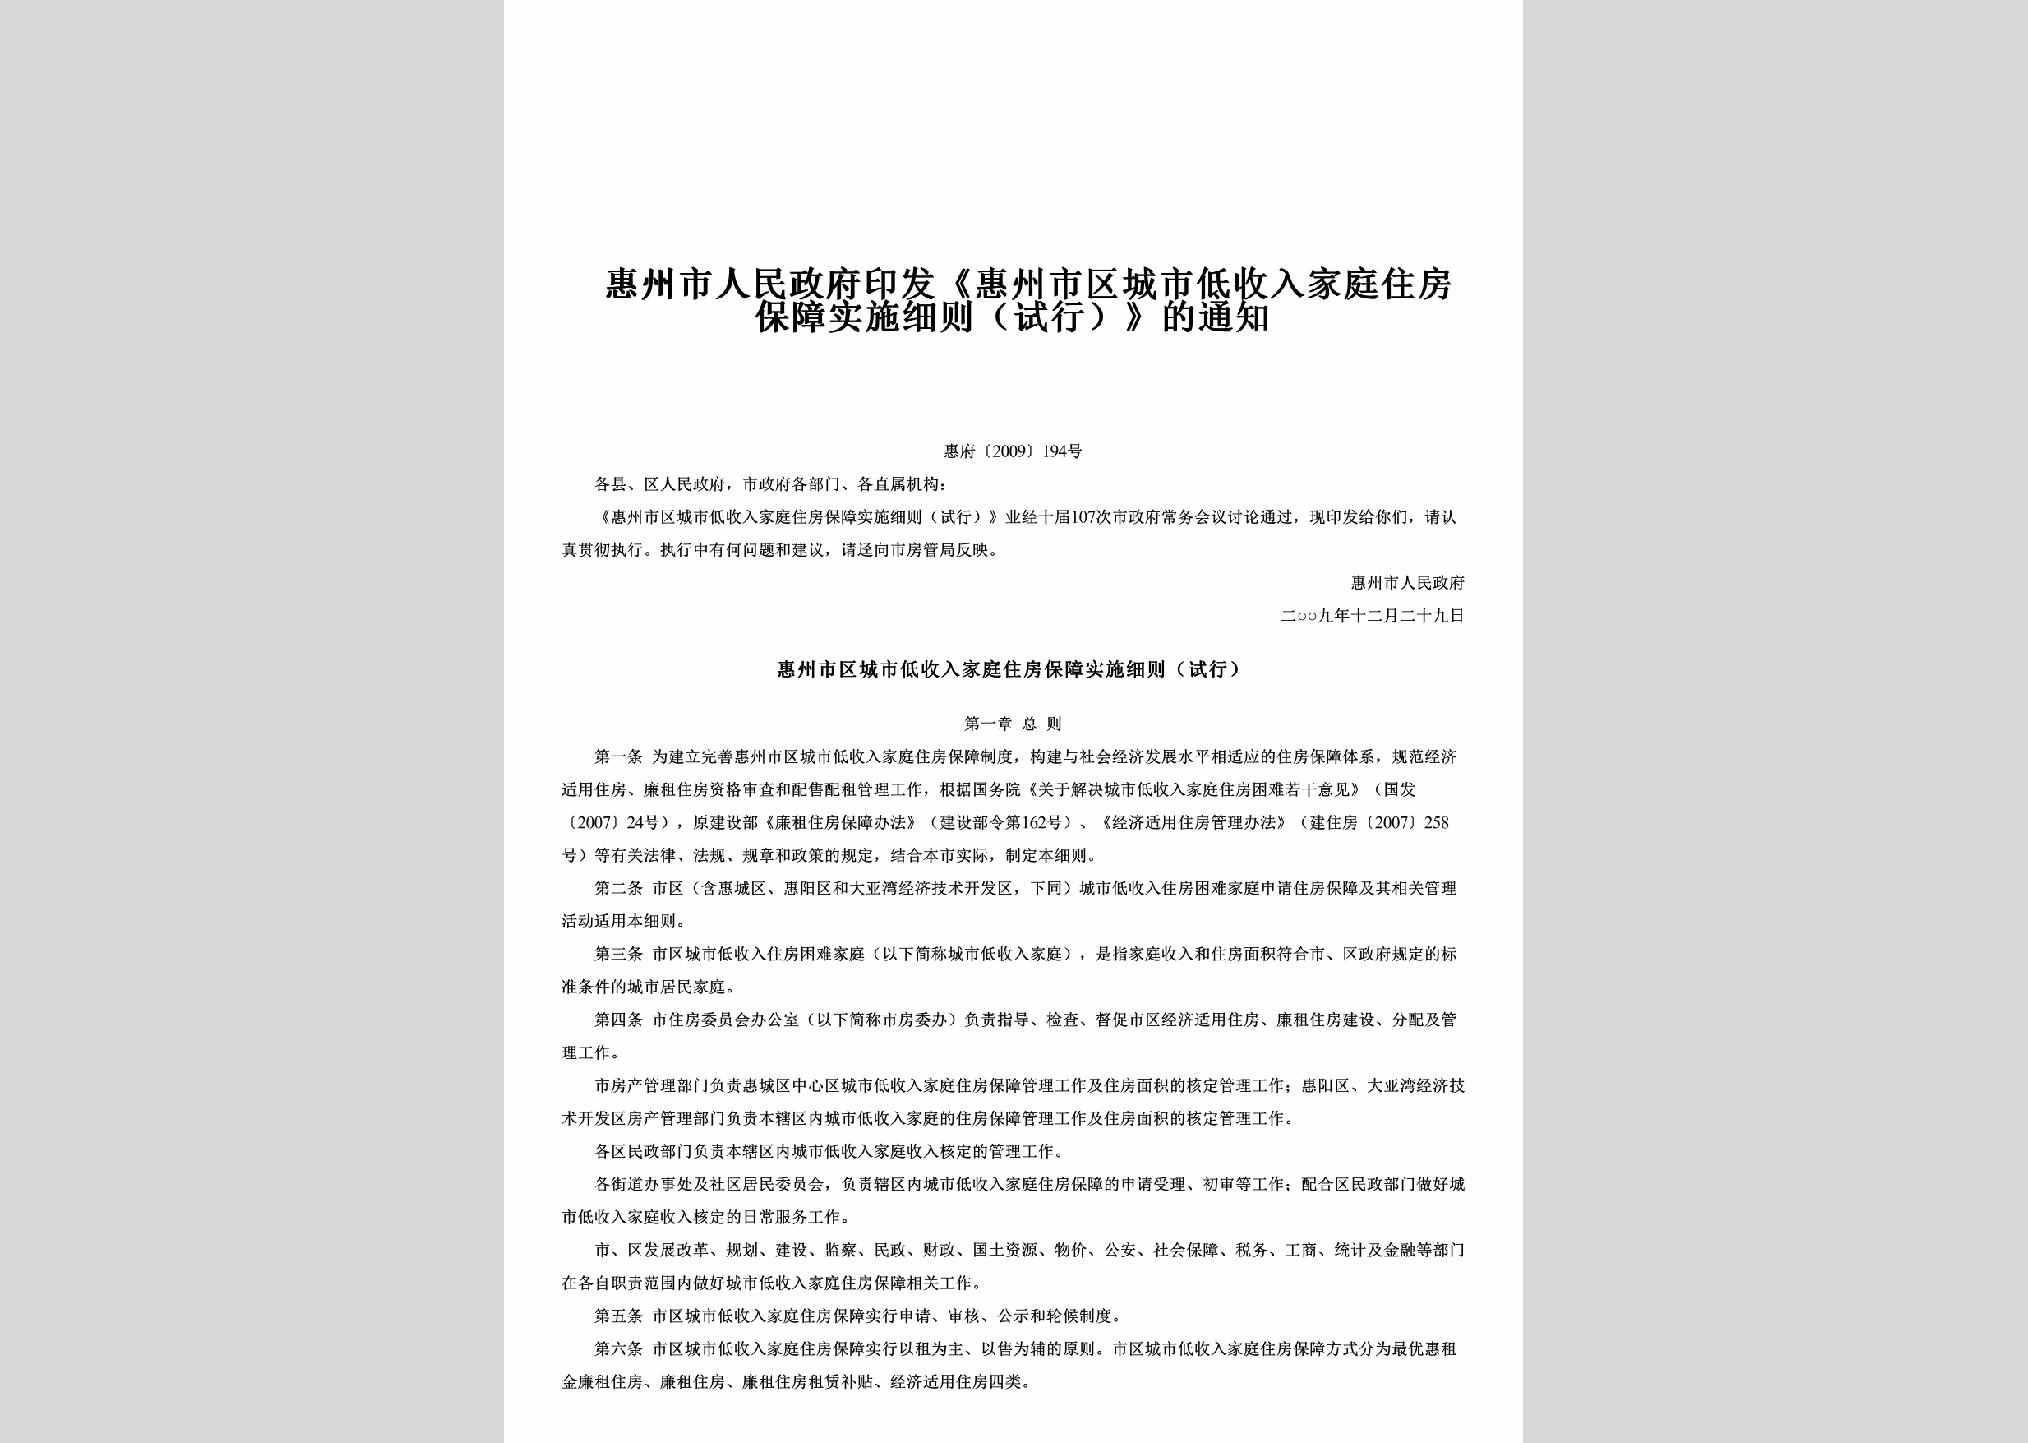 惠府[2009]194号：印发《惠州市区城市低收入家庭住房保障实施细则（试行）》的通知